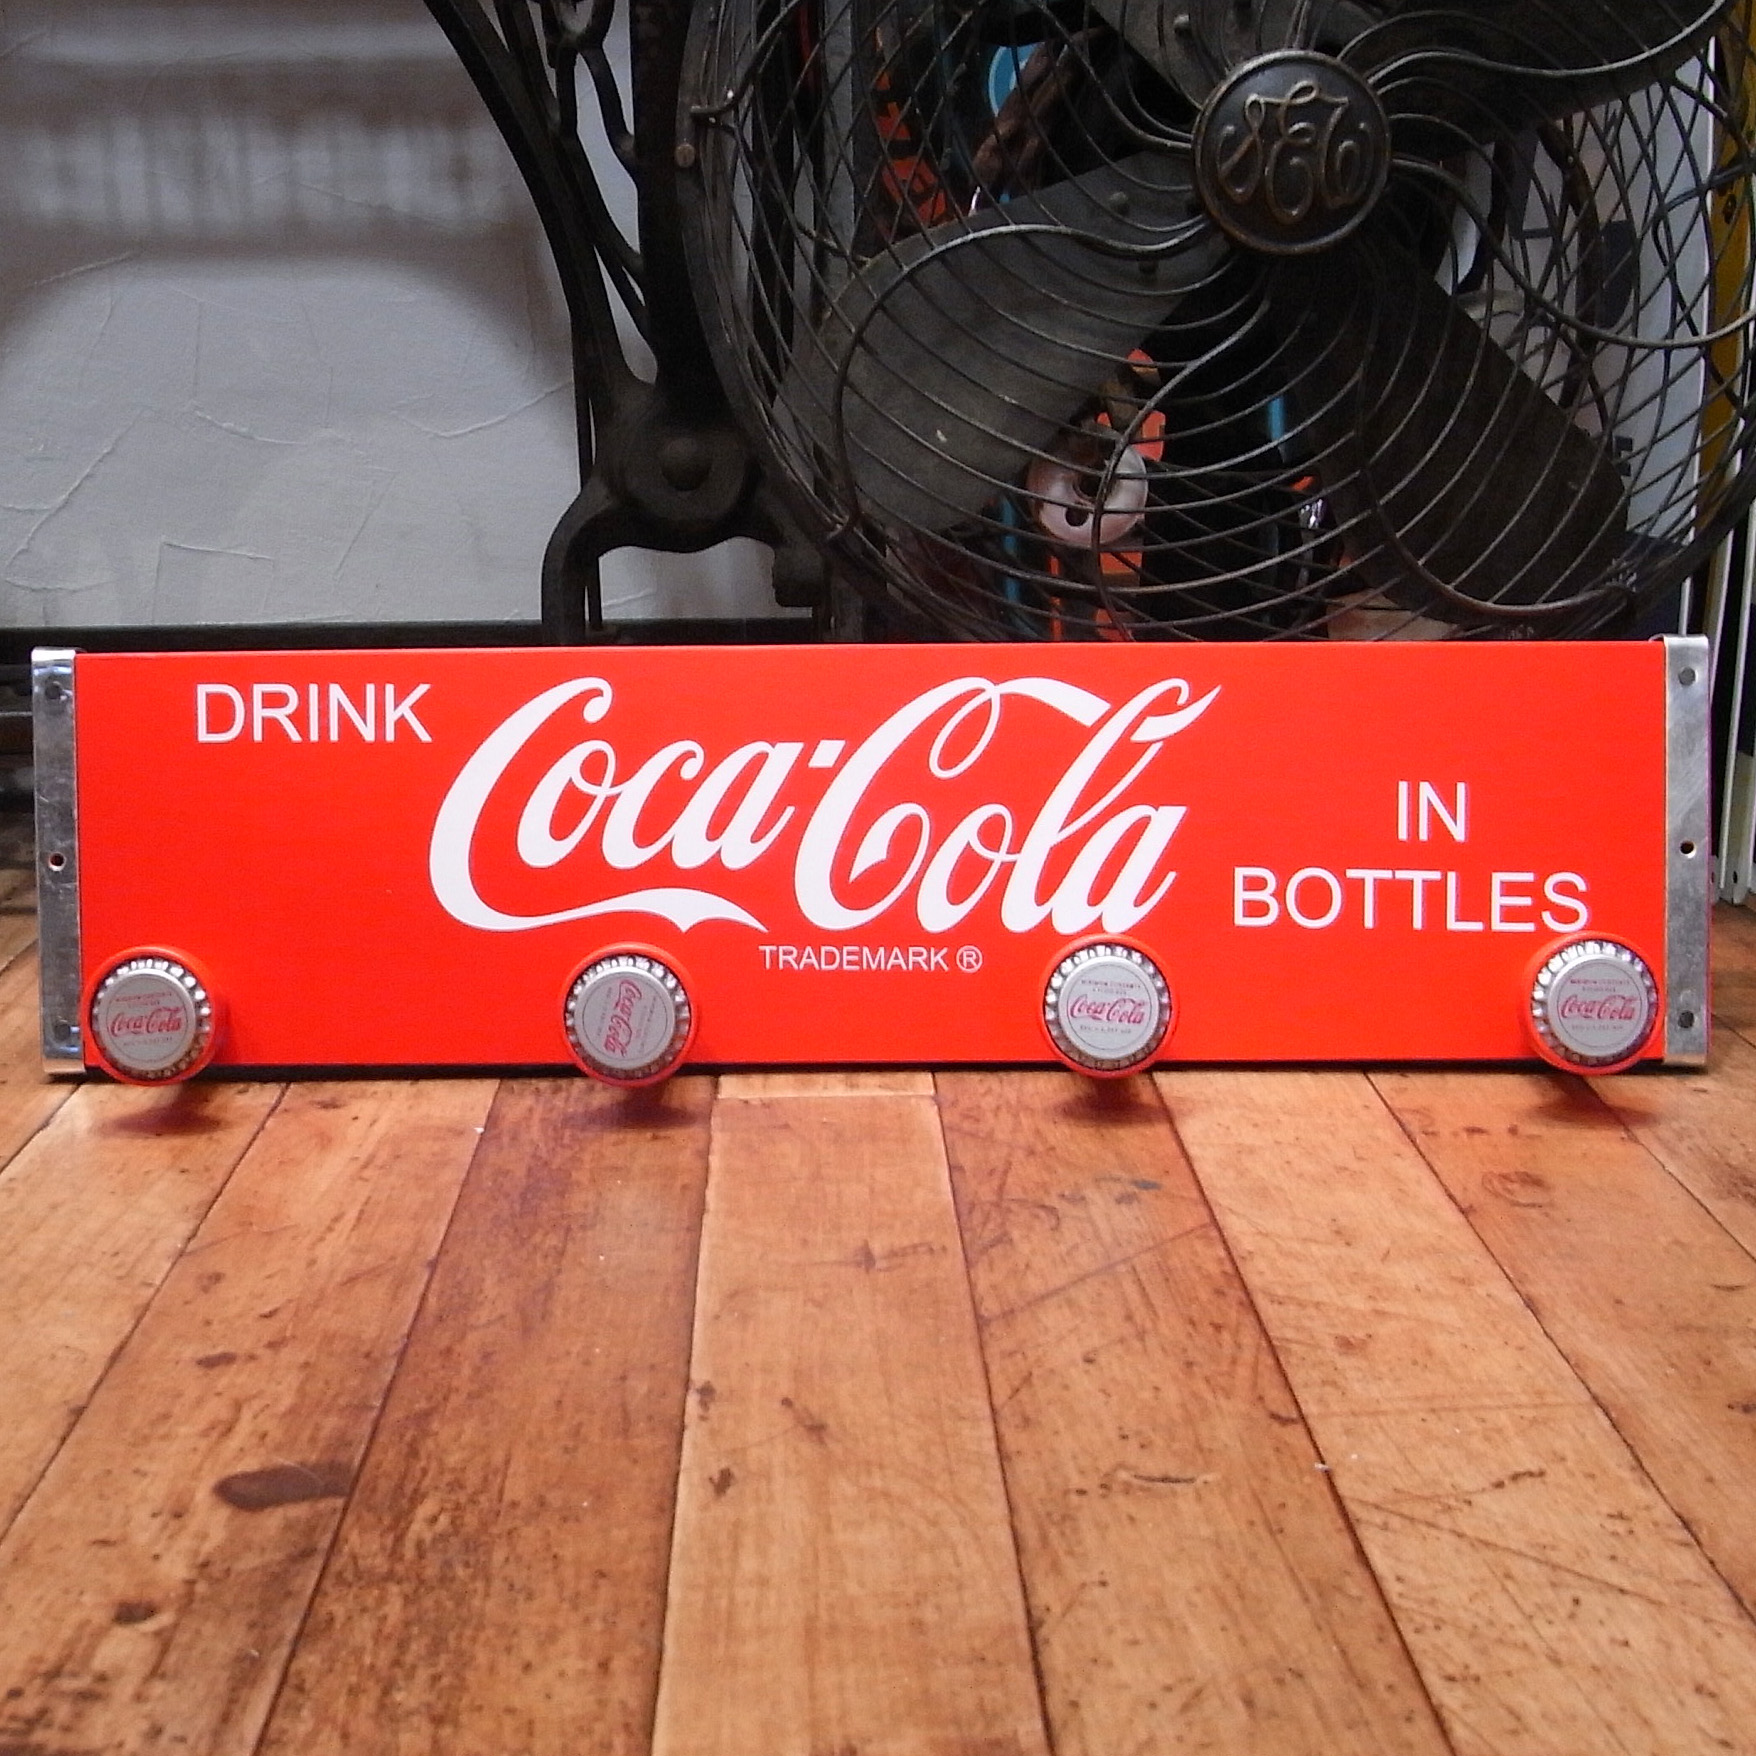 コカ・コーラ木製コートハンガー【ボトルキャップ】アメリカン雑貨 インテリア雑貨画像